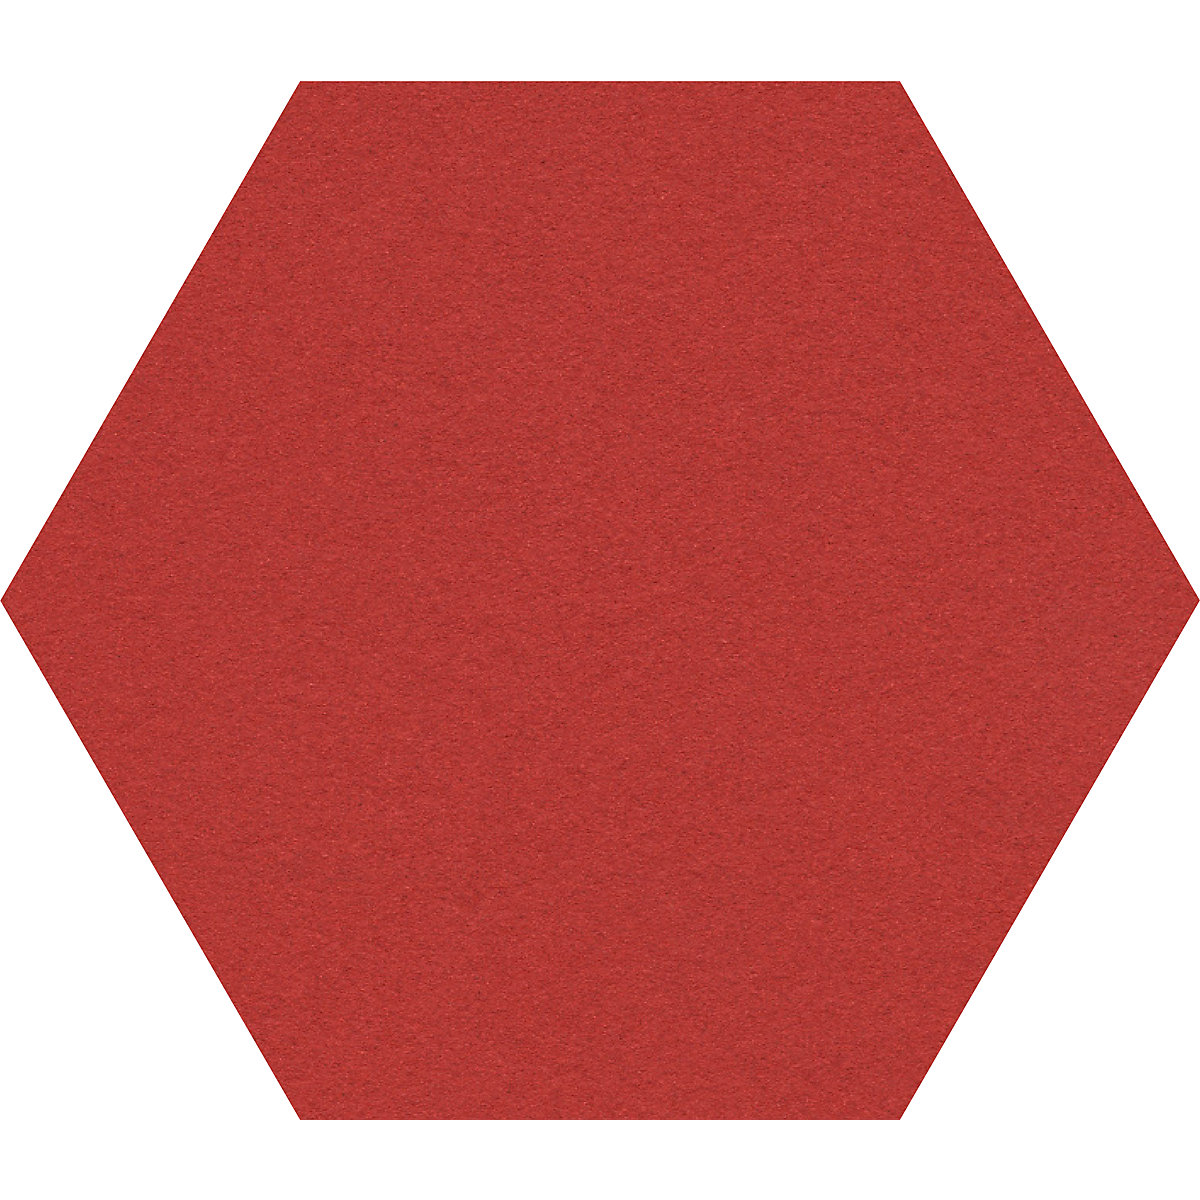 Elegantna oglasna deska, šesterokotna – Chameleon, pluta, ŠxV 600 x 600 mm, rdeče barve-31